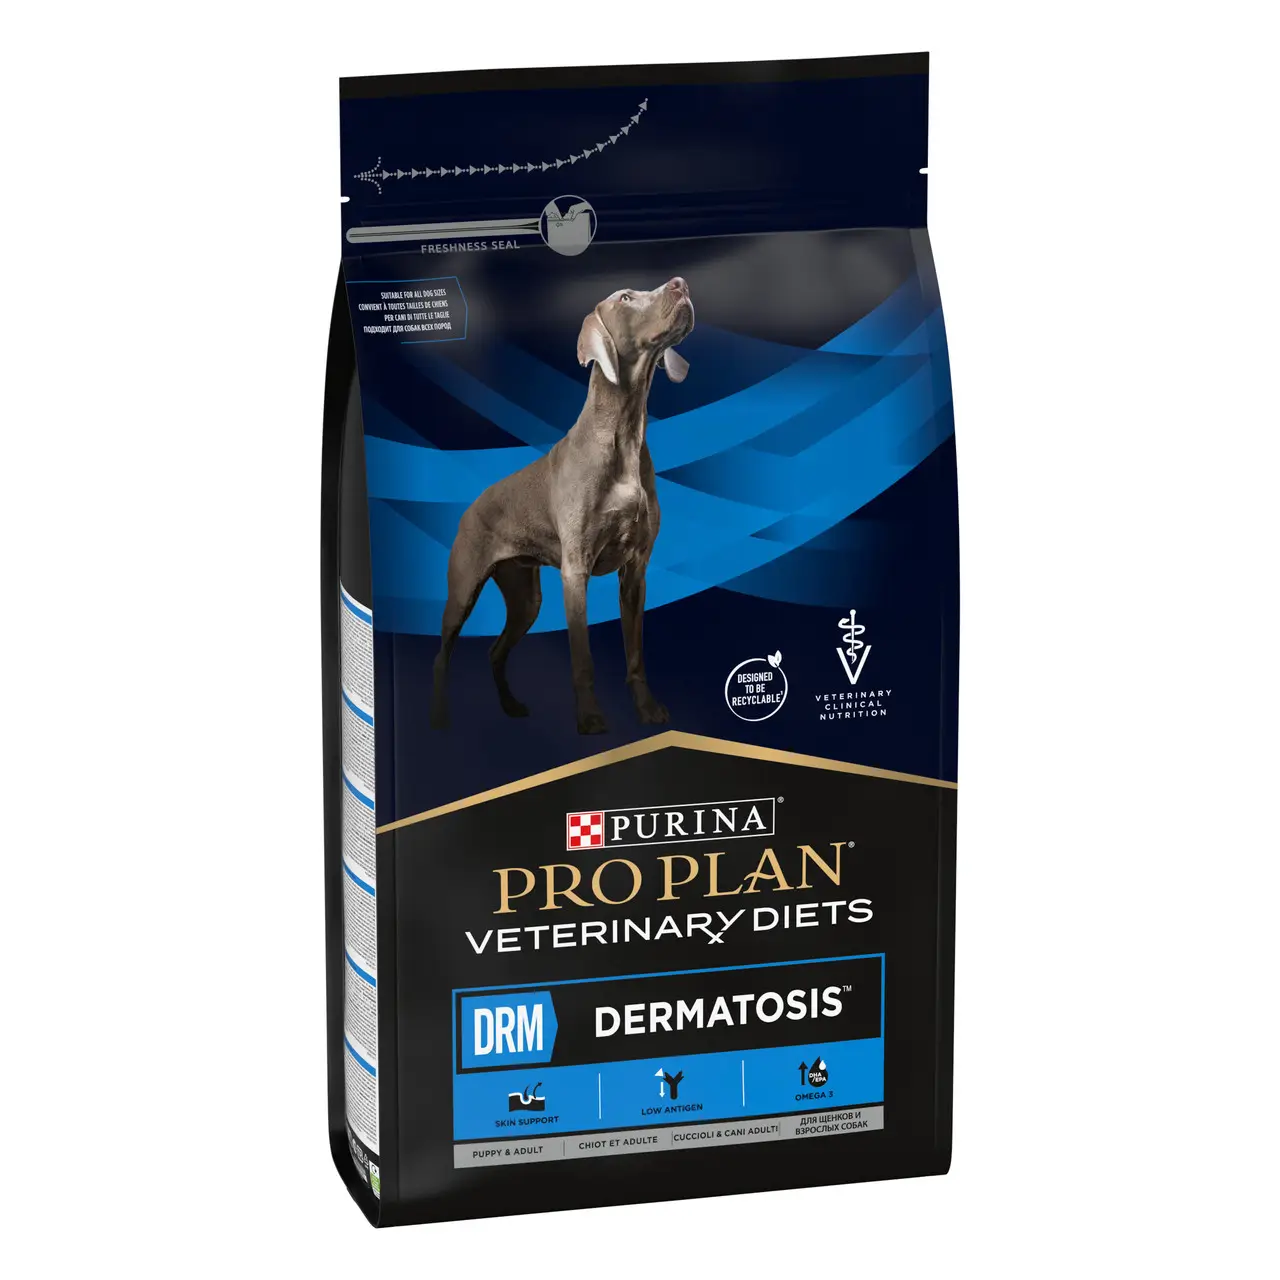 Pro Plan Veterinary Diets DRM Dermatosis корм для підтримки шкіри при дерматозах у собак 3 кг1